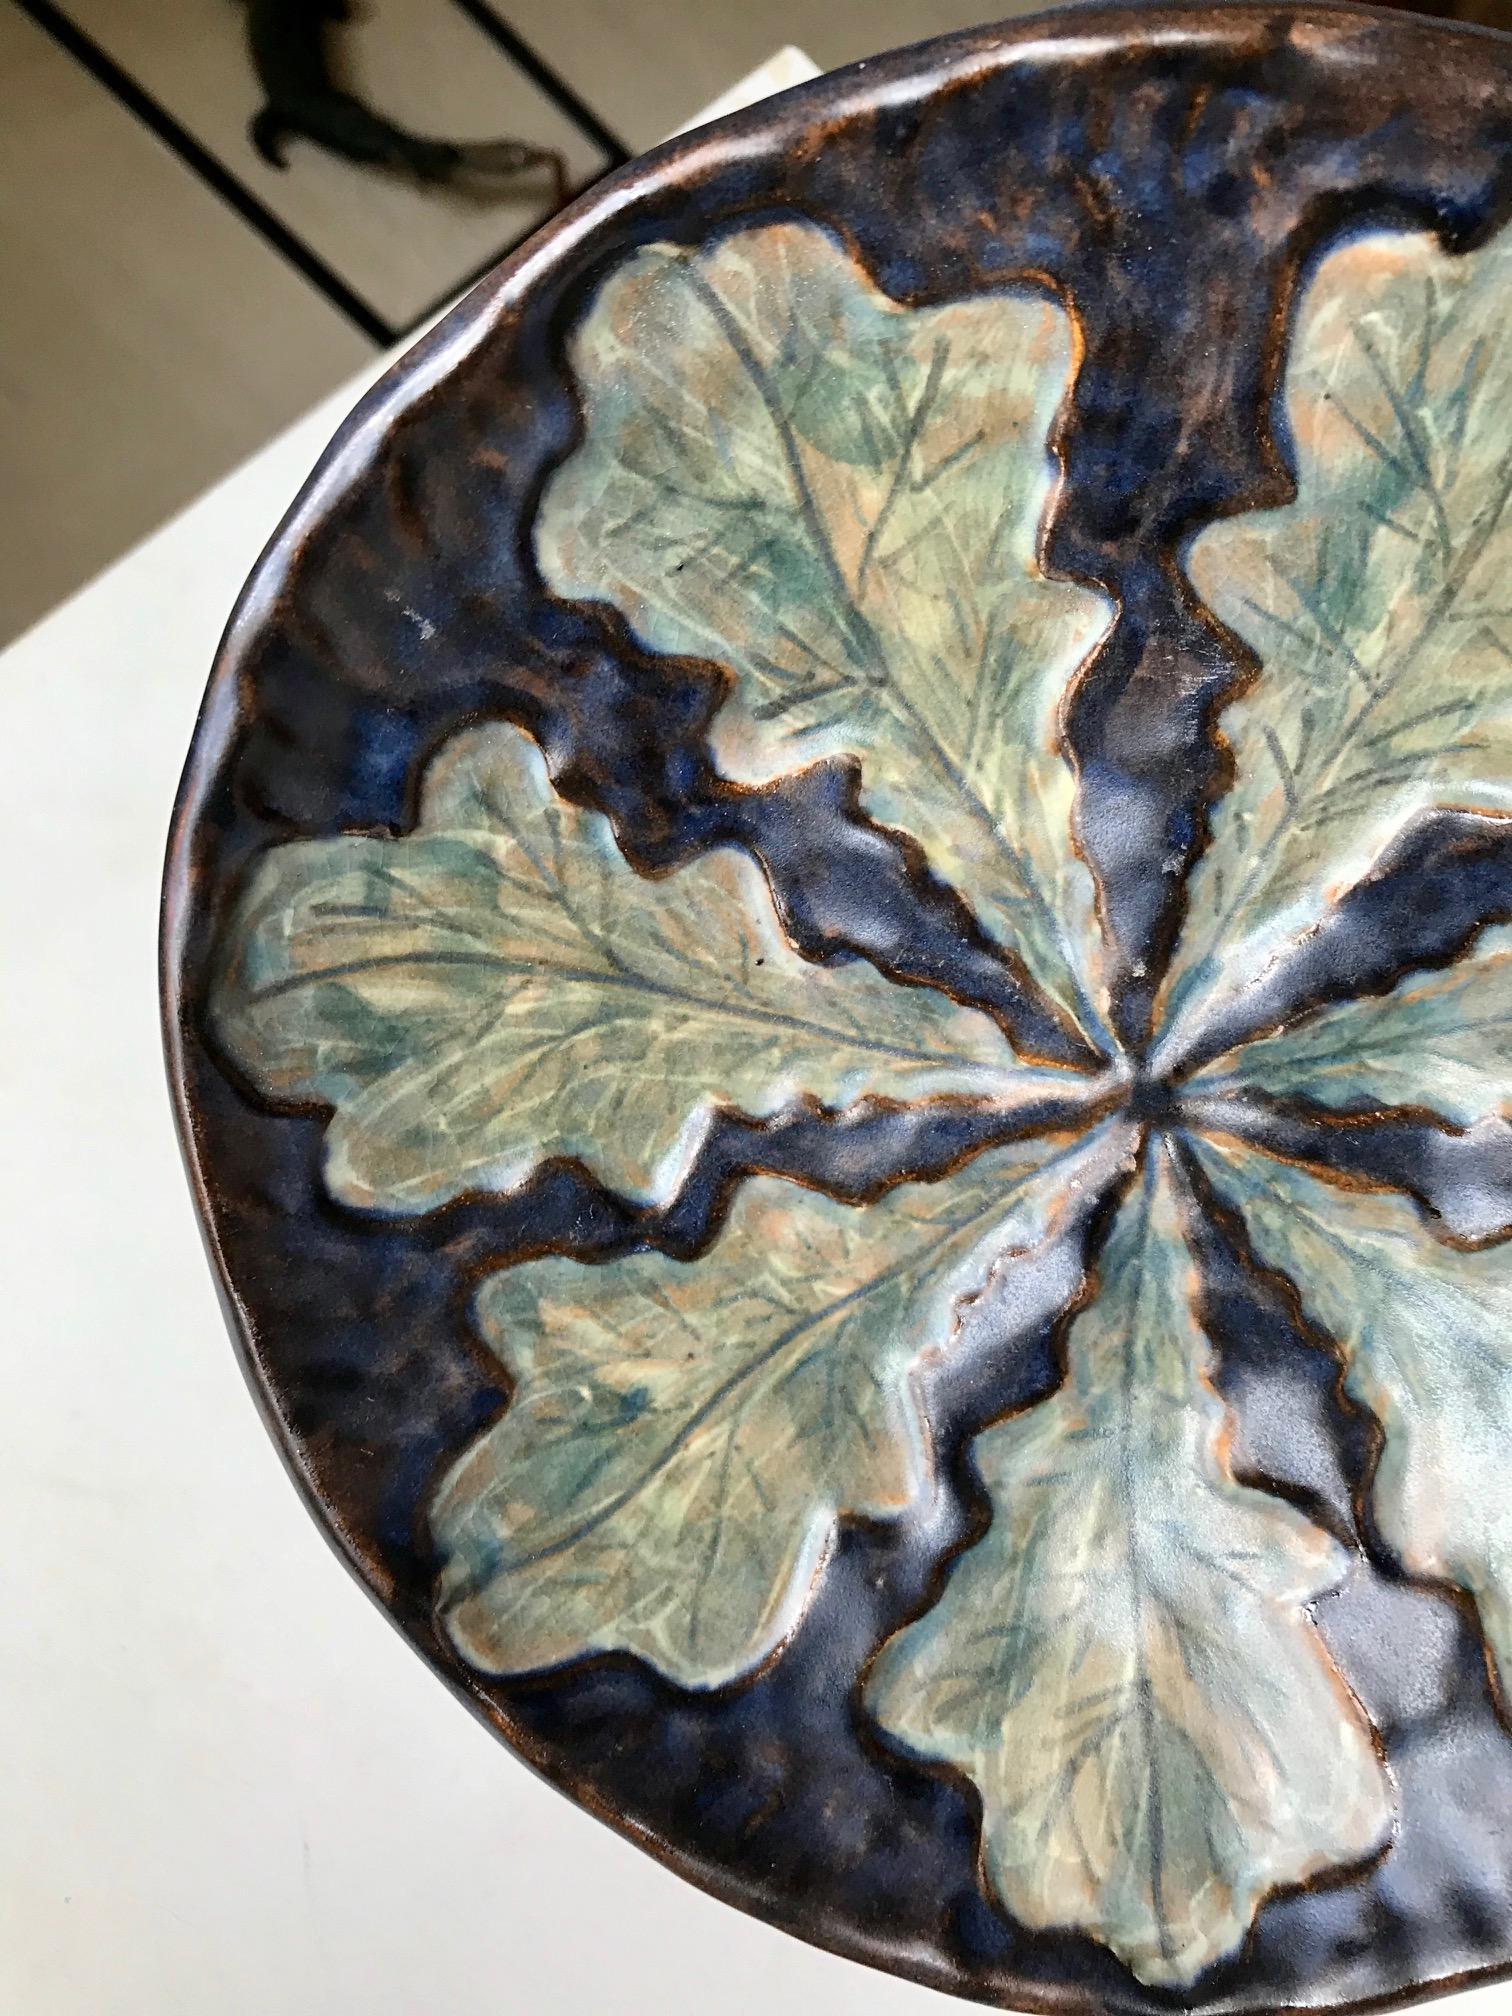 Un bol ou un plat unique avec un décor de feuilles peint à la main dans des glaçures vertes, bleues, noires et brunes. Conçu et fabriqué dans l'atelier de poterie d'Emil Ruge à Dybøl, au Danemark, dans les années 1930. Références subtiles à Thorvald